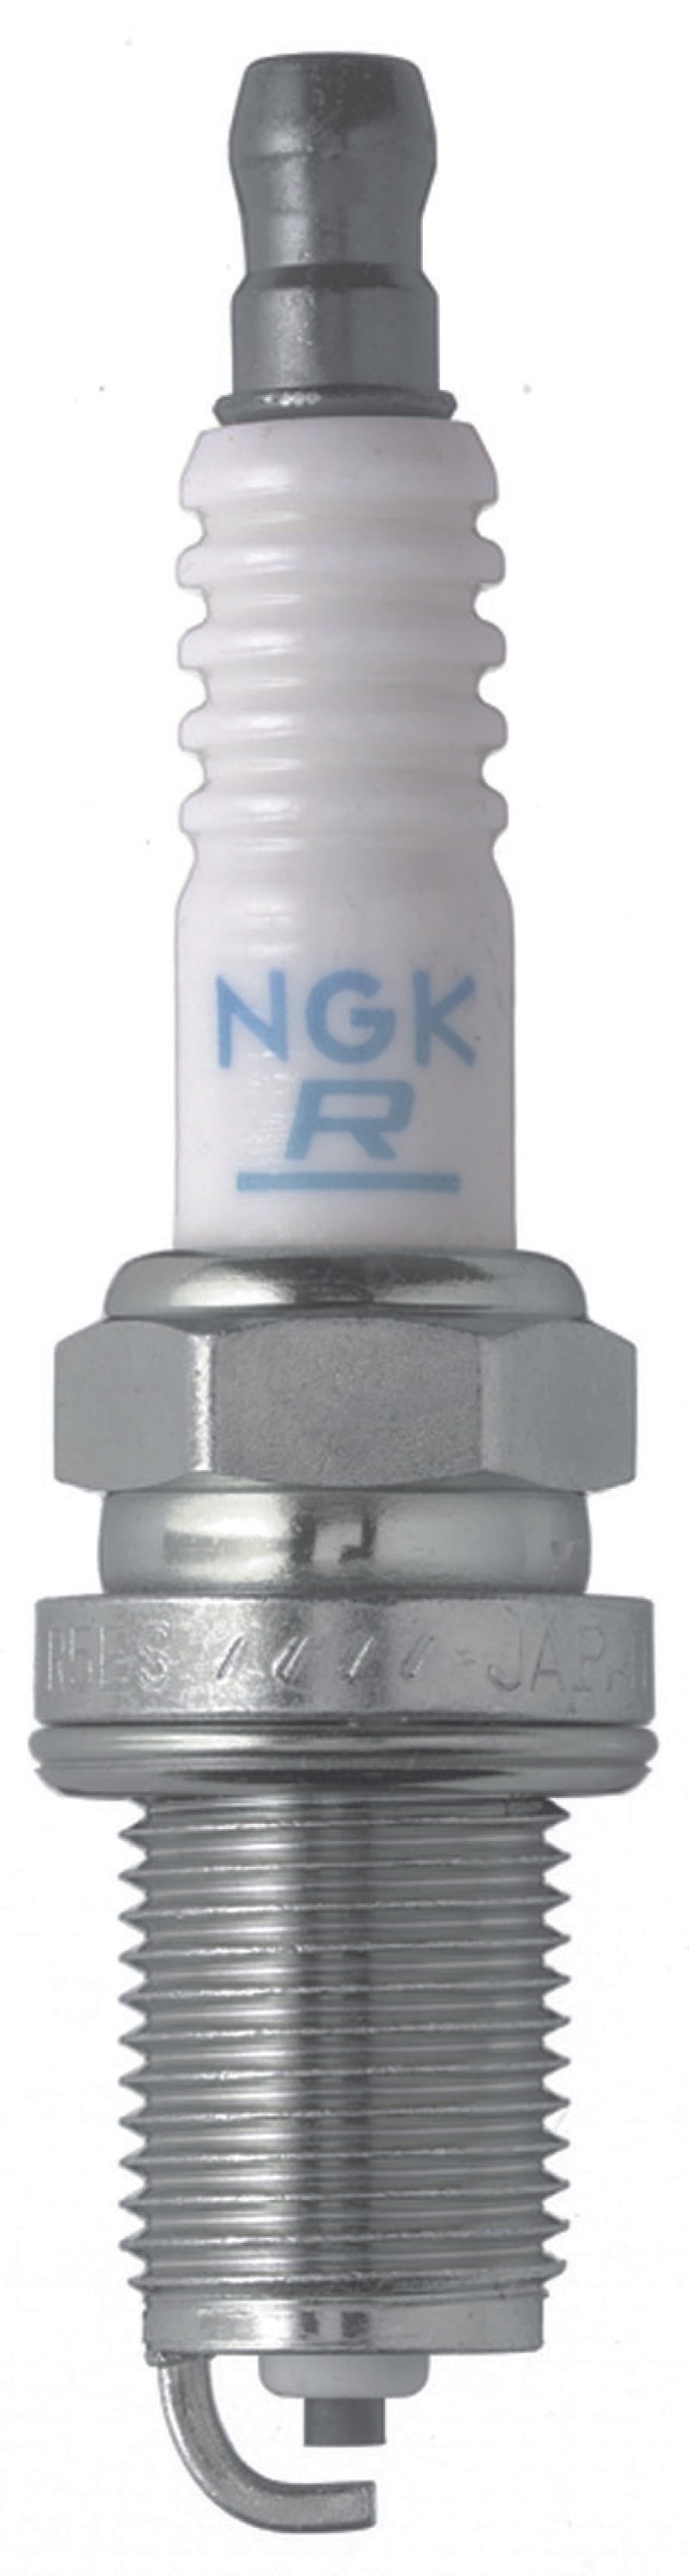 NGK Nickel Spark Plug Box of 4 (BKR7ES-11).